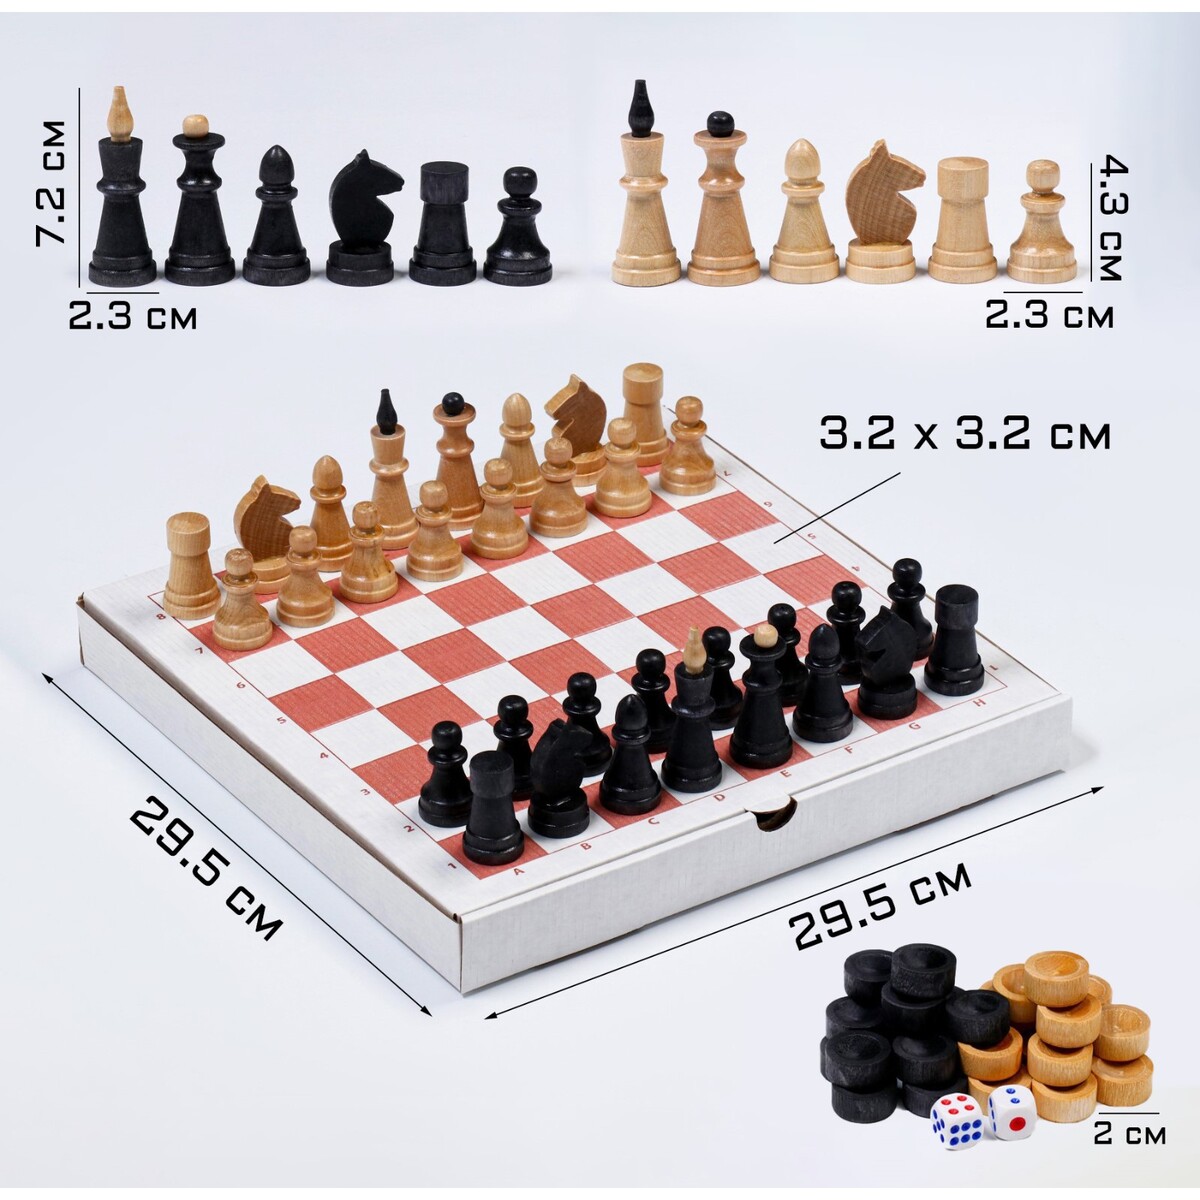 Настольная игра 3 в 1: шахматы, шашки, нарды, деревянные фигуры, доска 29.5 х 29.5 см игра 3 в 1 малая нарды шахматы шашки 508 22